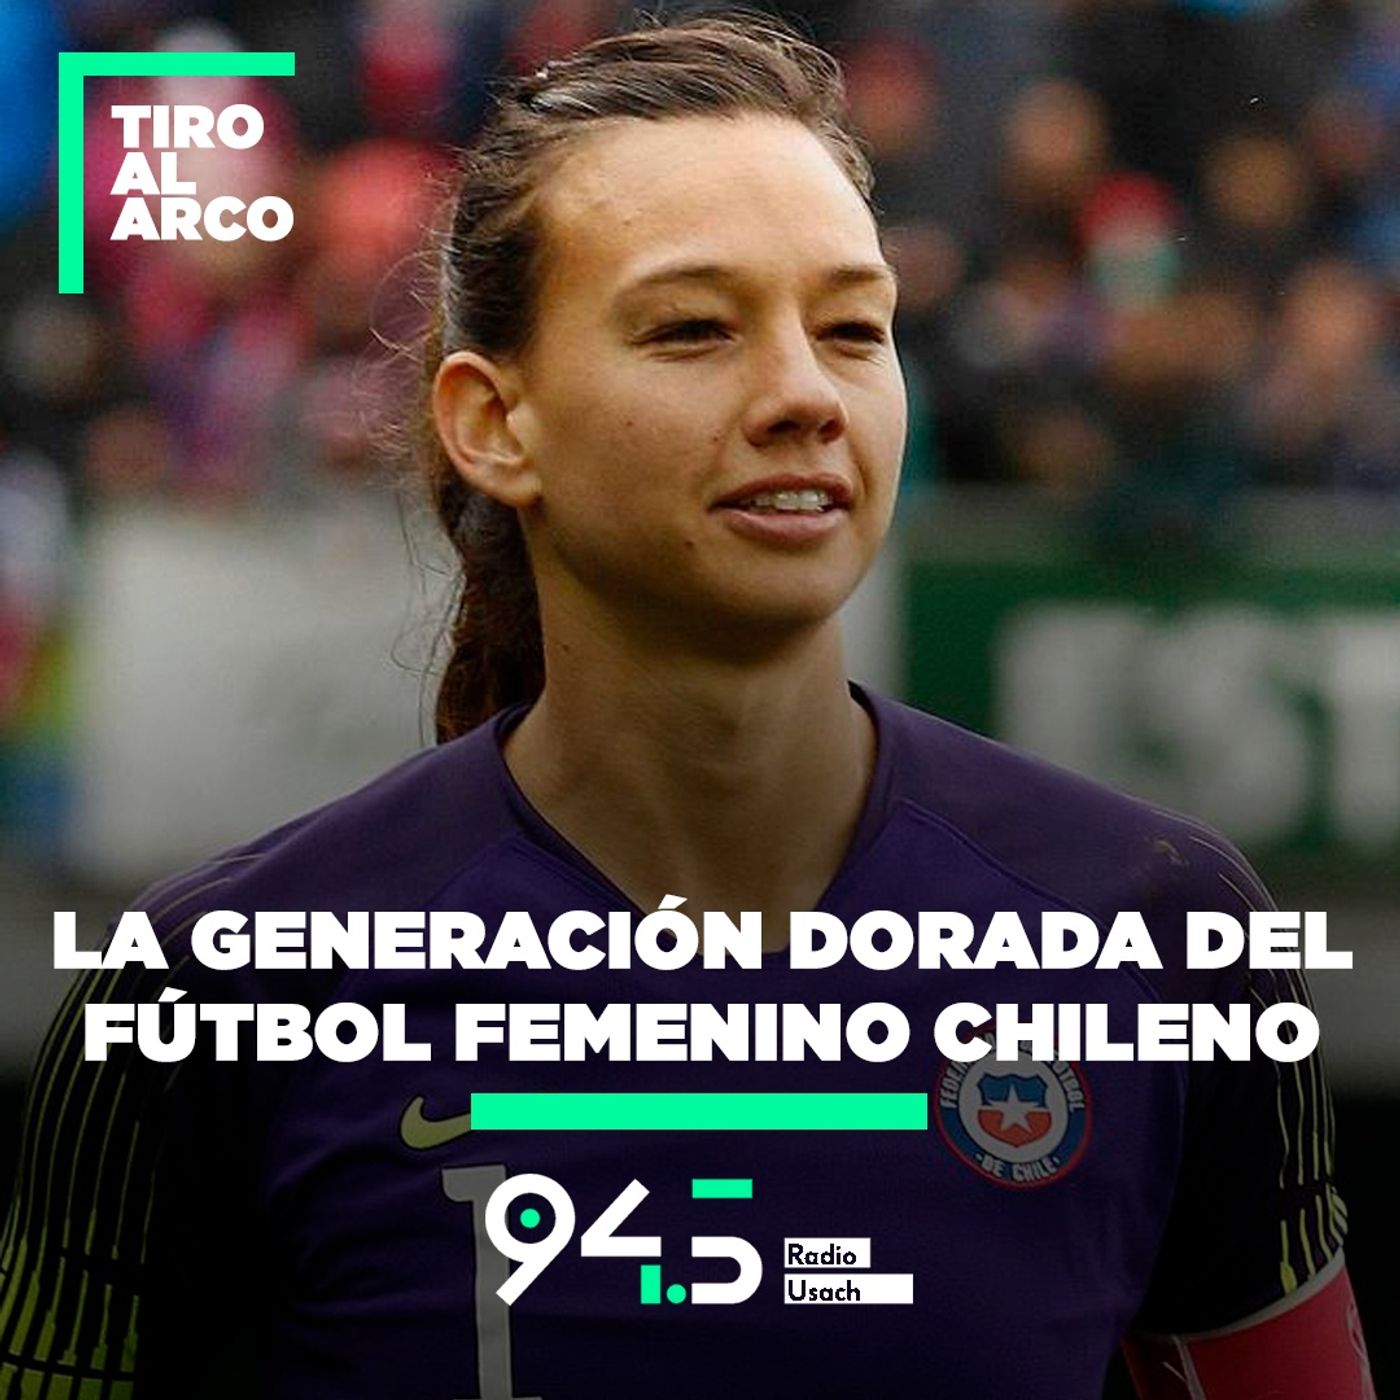 La generación dorada del fútbol femenino chileno